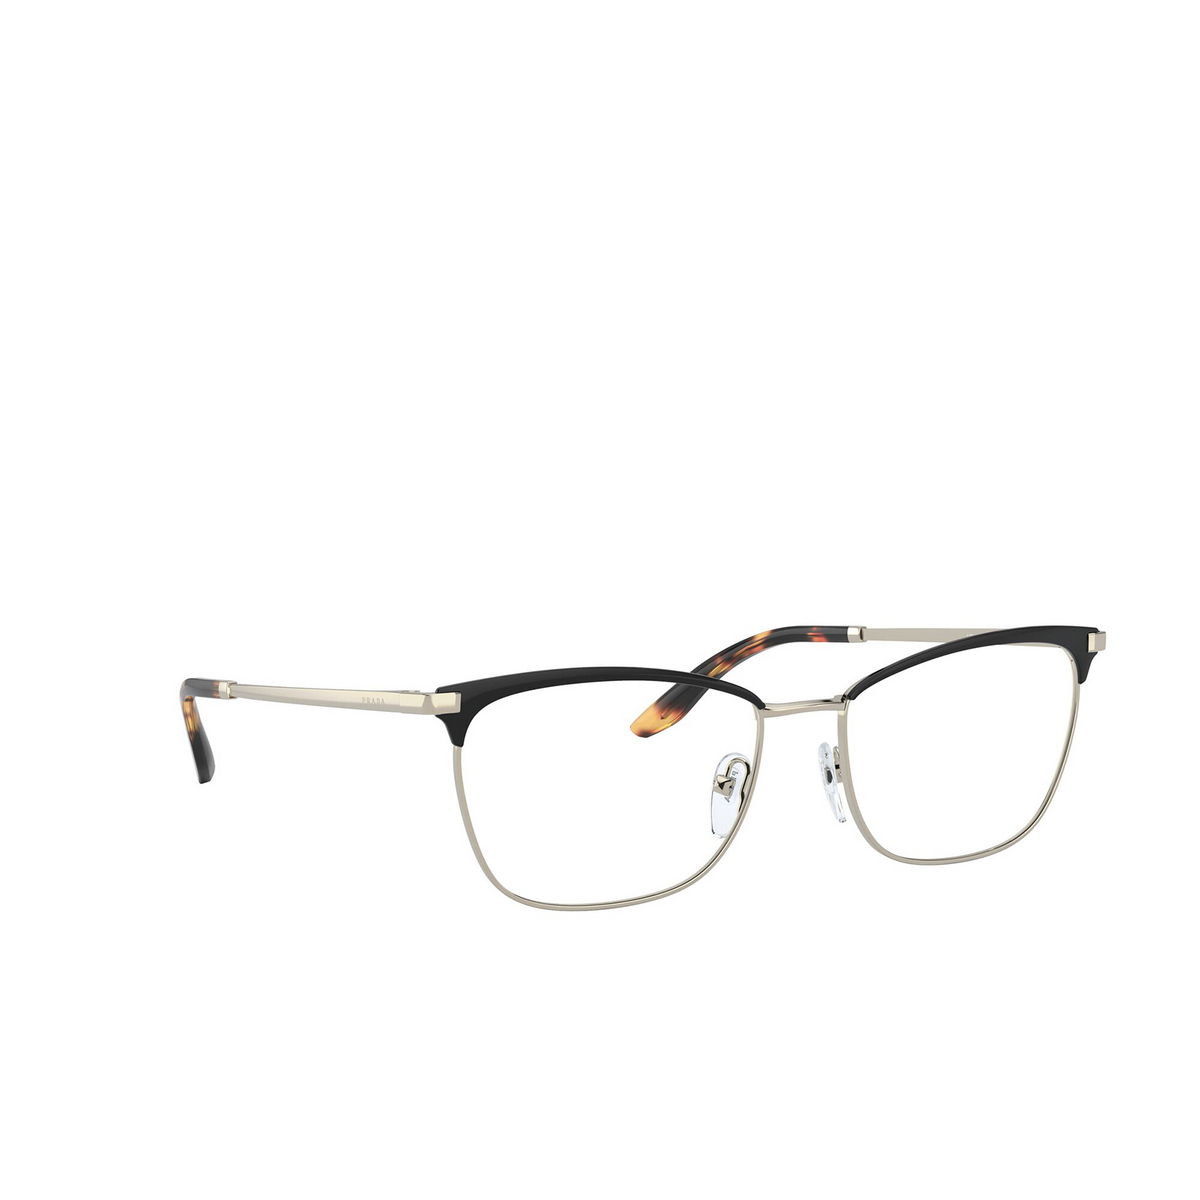 Prada® Irregular Eyeglasses: PR 57WV color Black / Pale Gold AAV1O1 - three-quarters view.